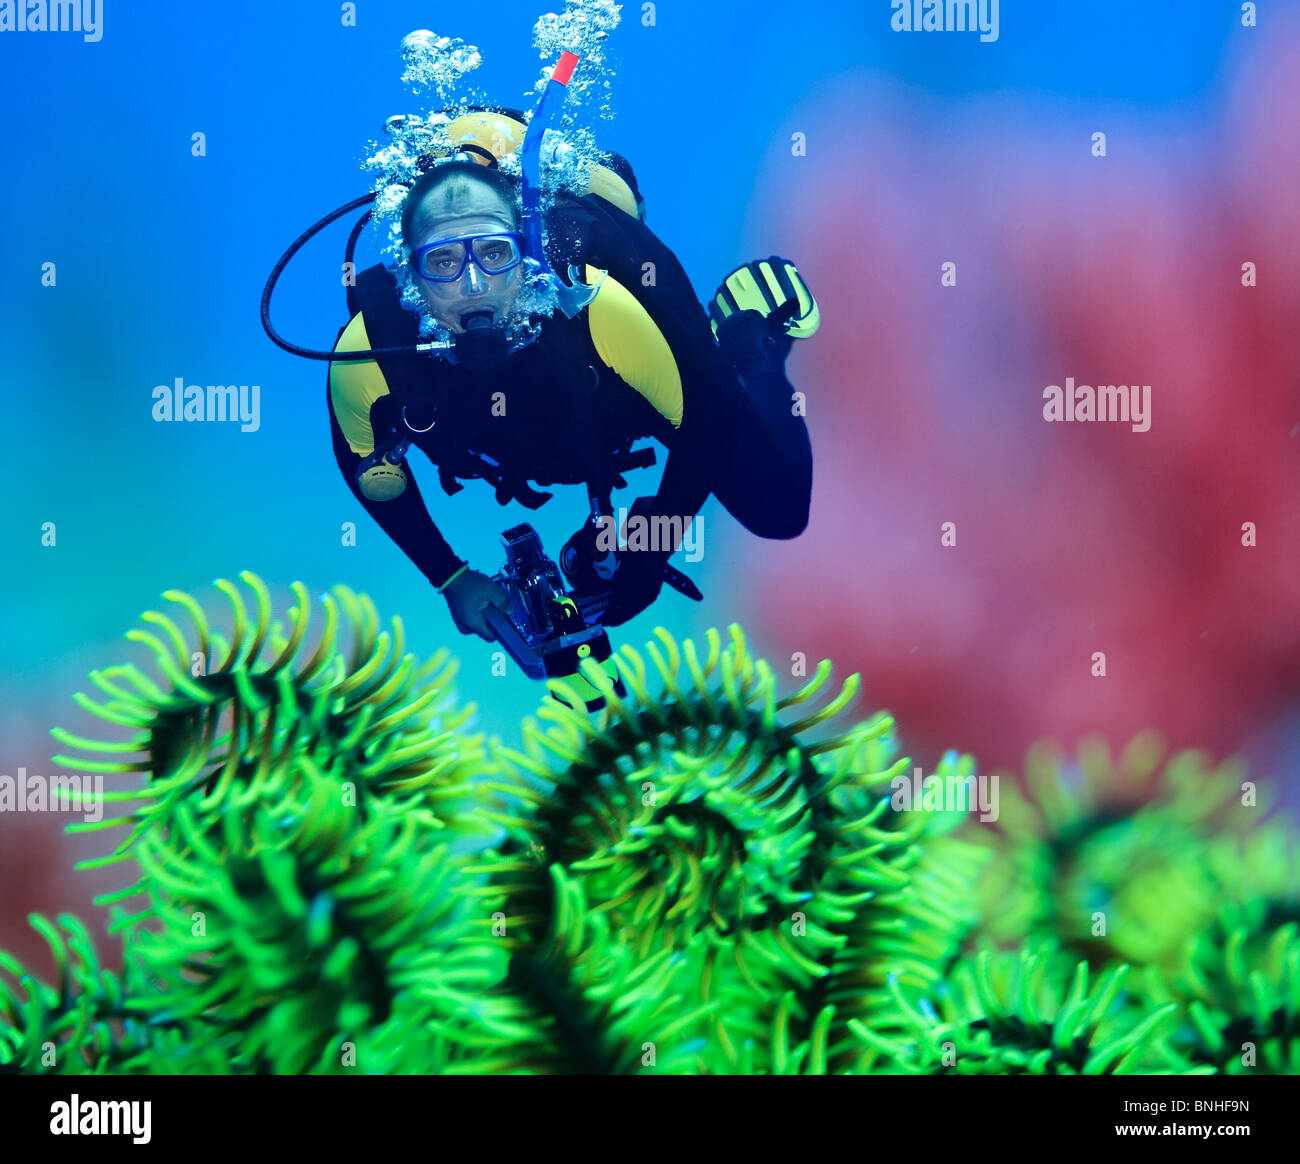 Taucher unter Wasser mit Feder Seestern im Vordergrund. Taucher im Fokus Stockfoto